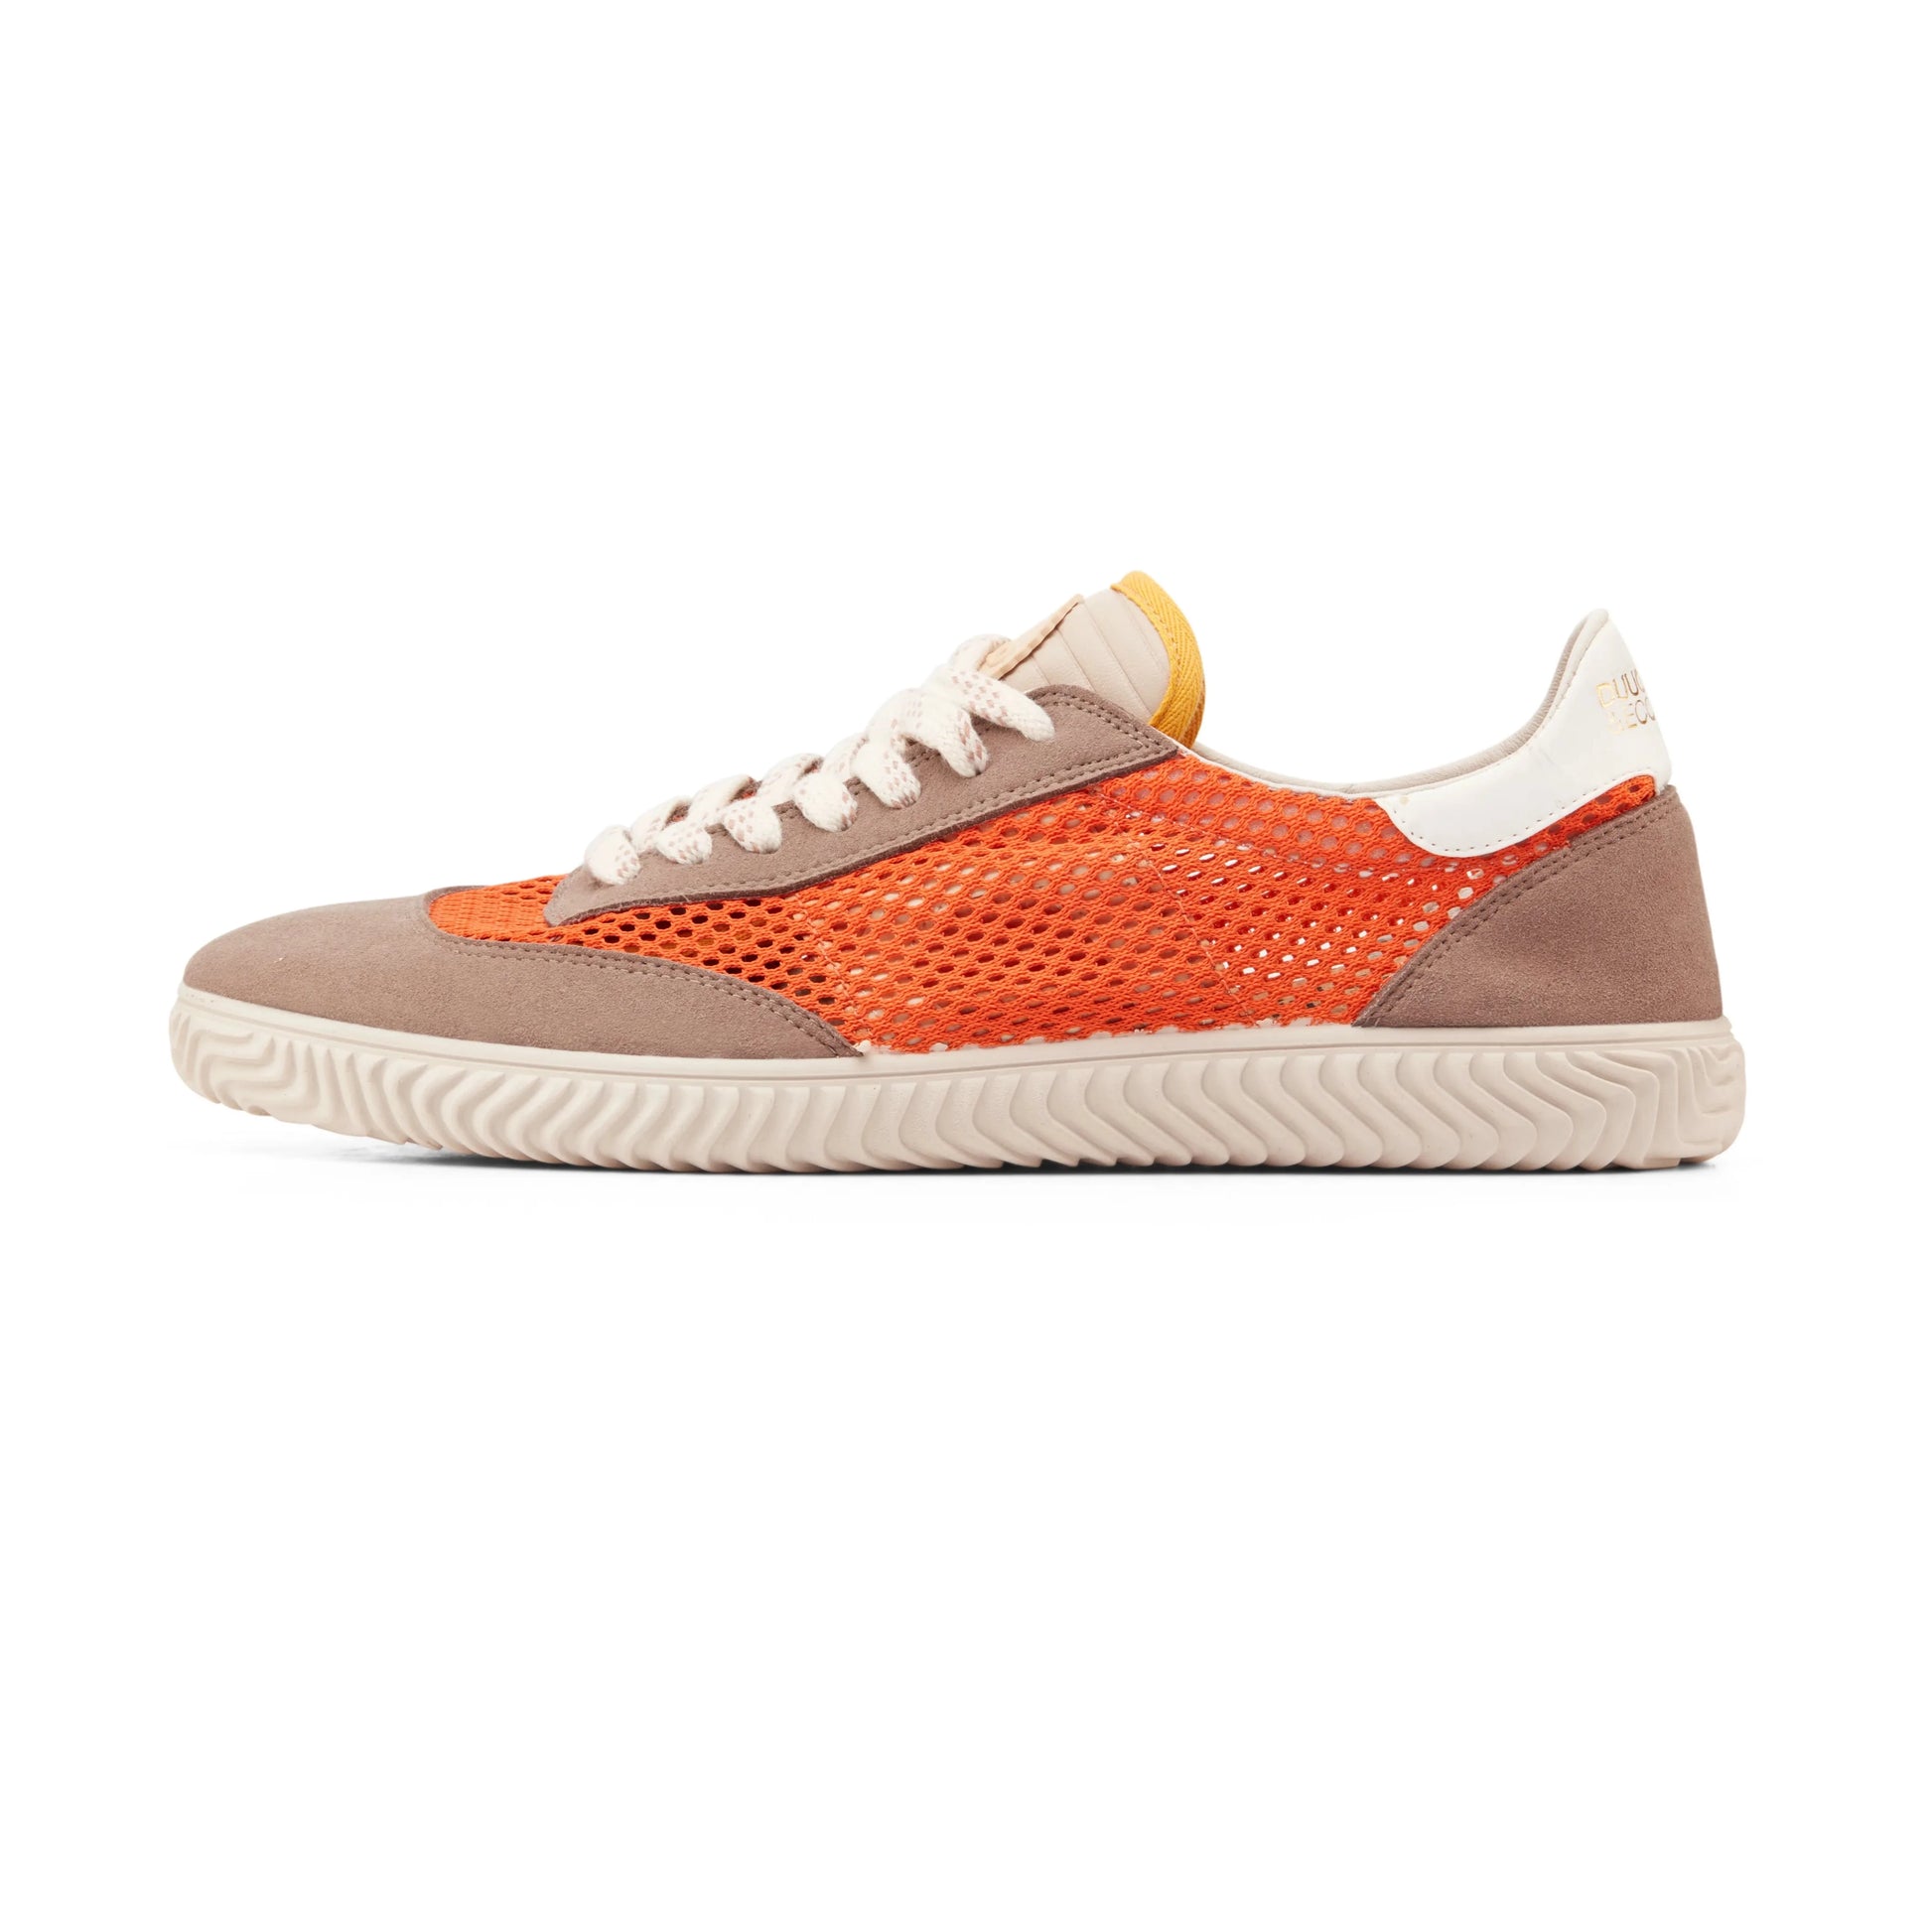 Sneakers De La Marca Duuo Para Mujer Modelo Ona Lace Mesh 012 En Color Naranja